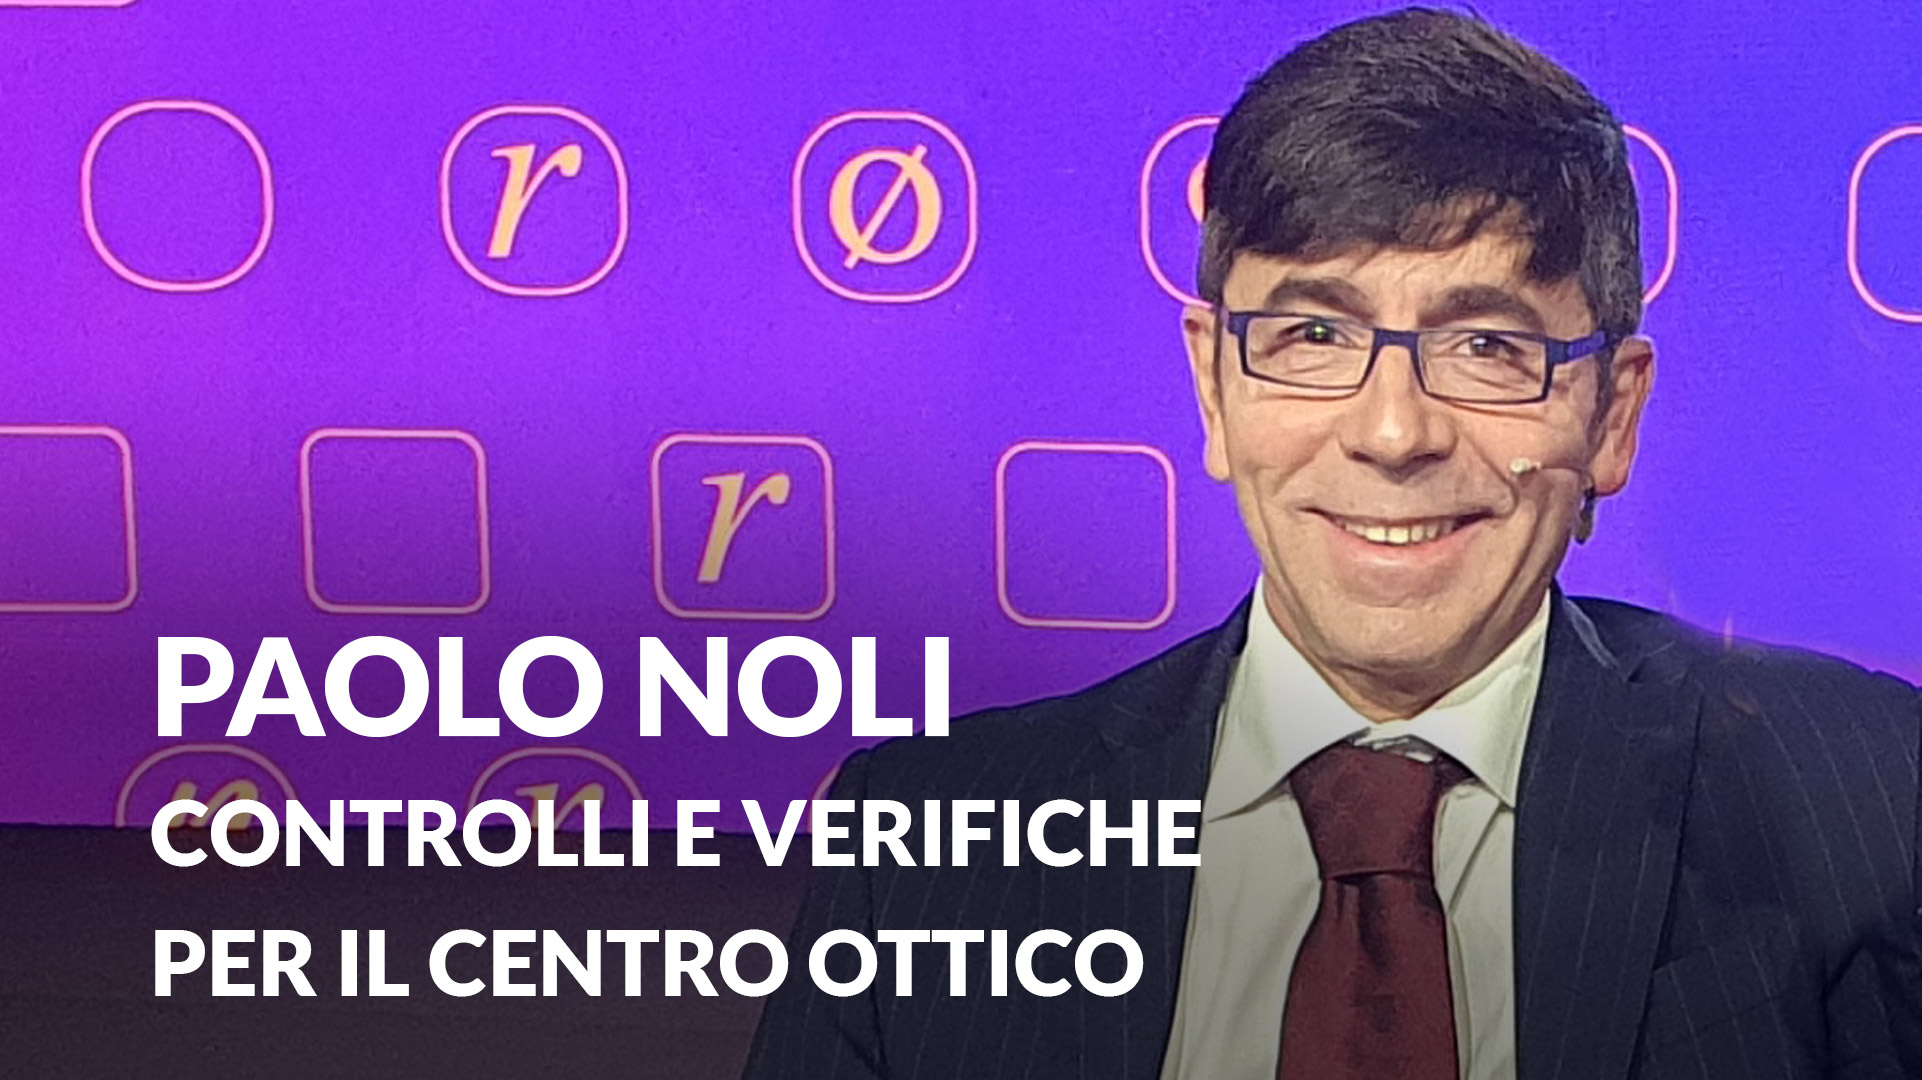 Paolo Noli